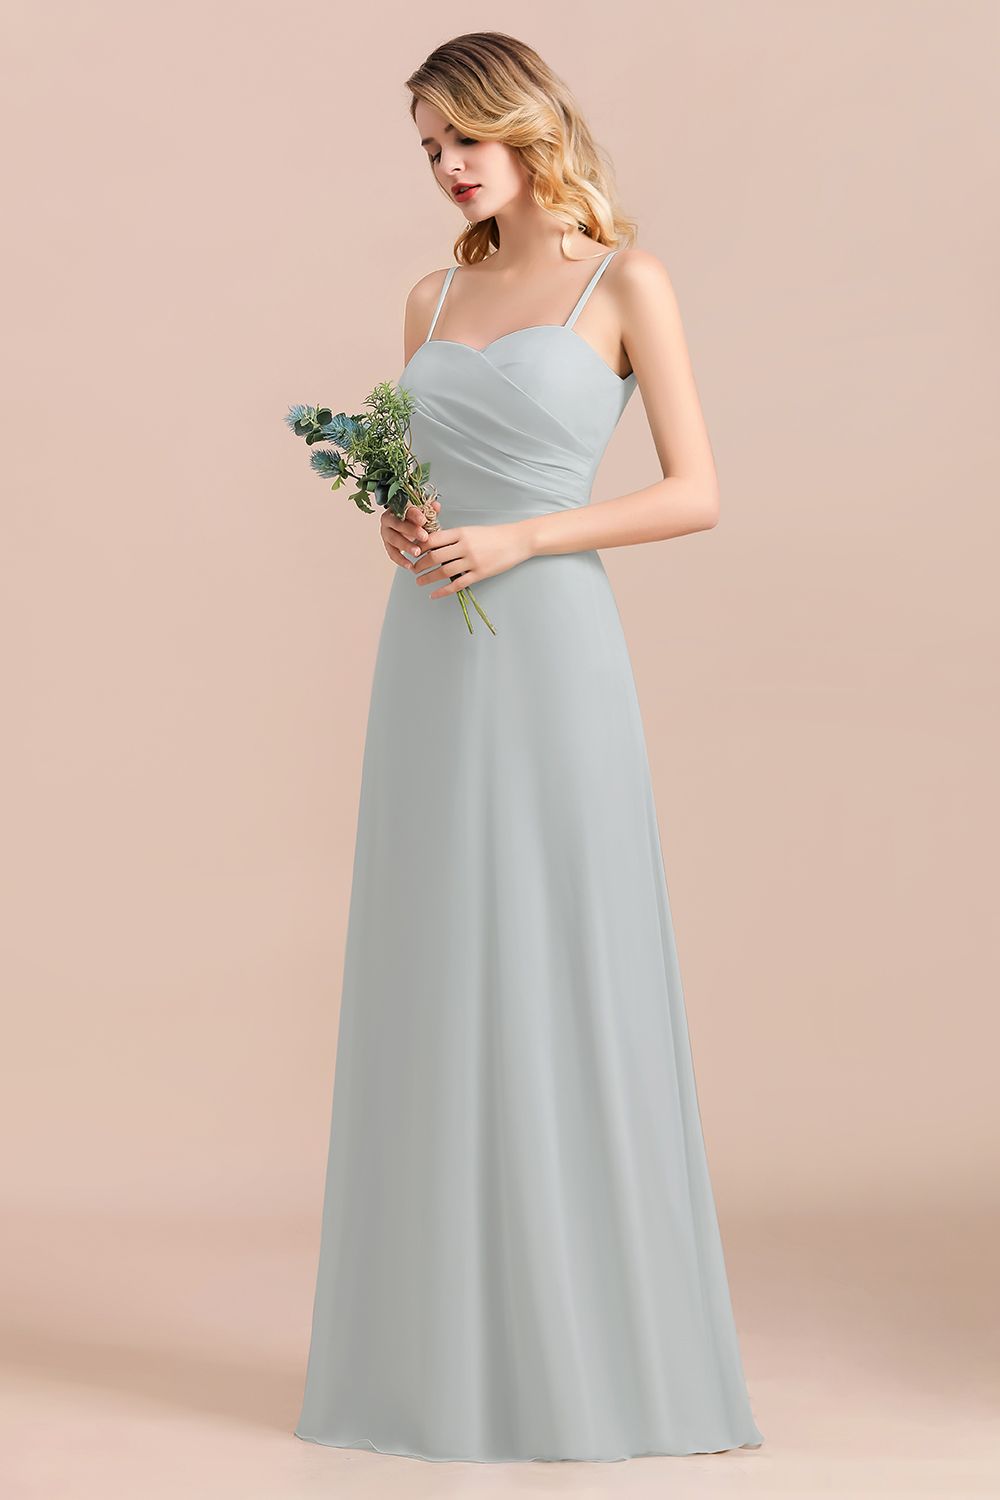 Suchen Sie Schlichtes Abendkleid Chiffon online bei babyonlinedress.de. Brautjungfernkleider Lang Günstig für Sie maß geschneidert kaufen.